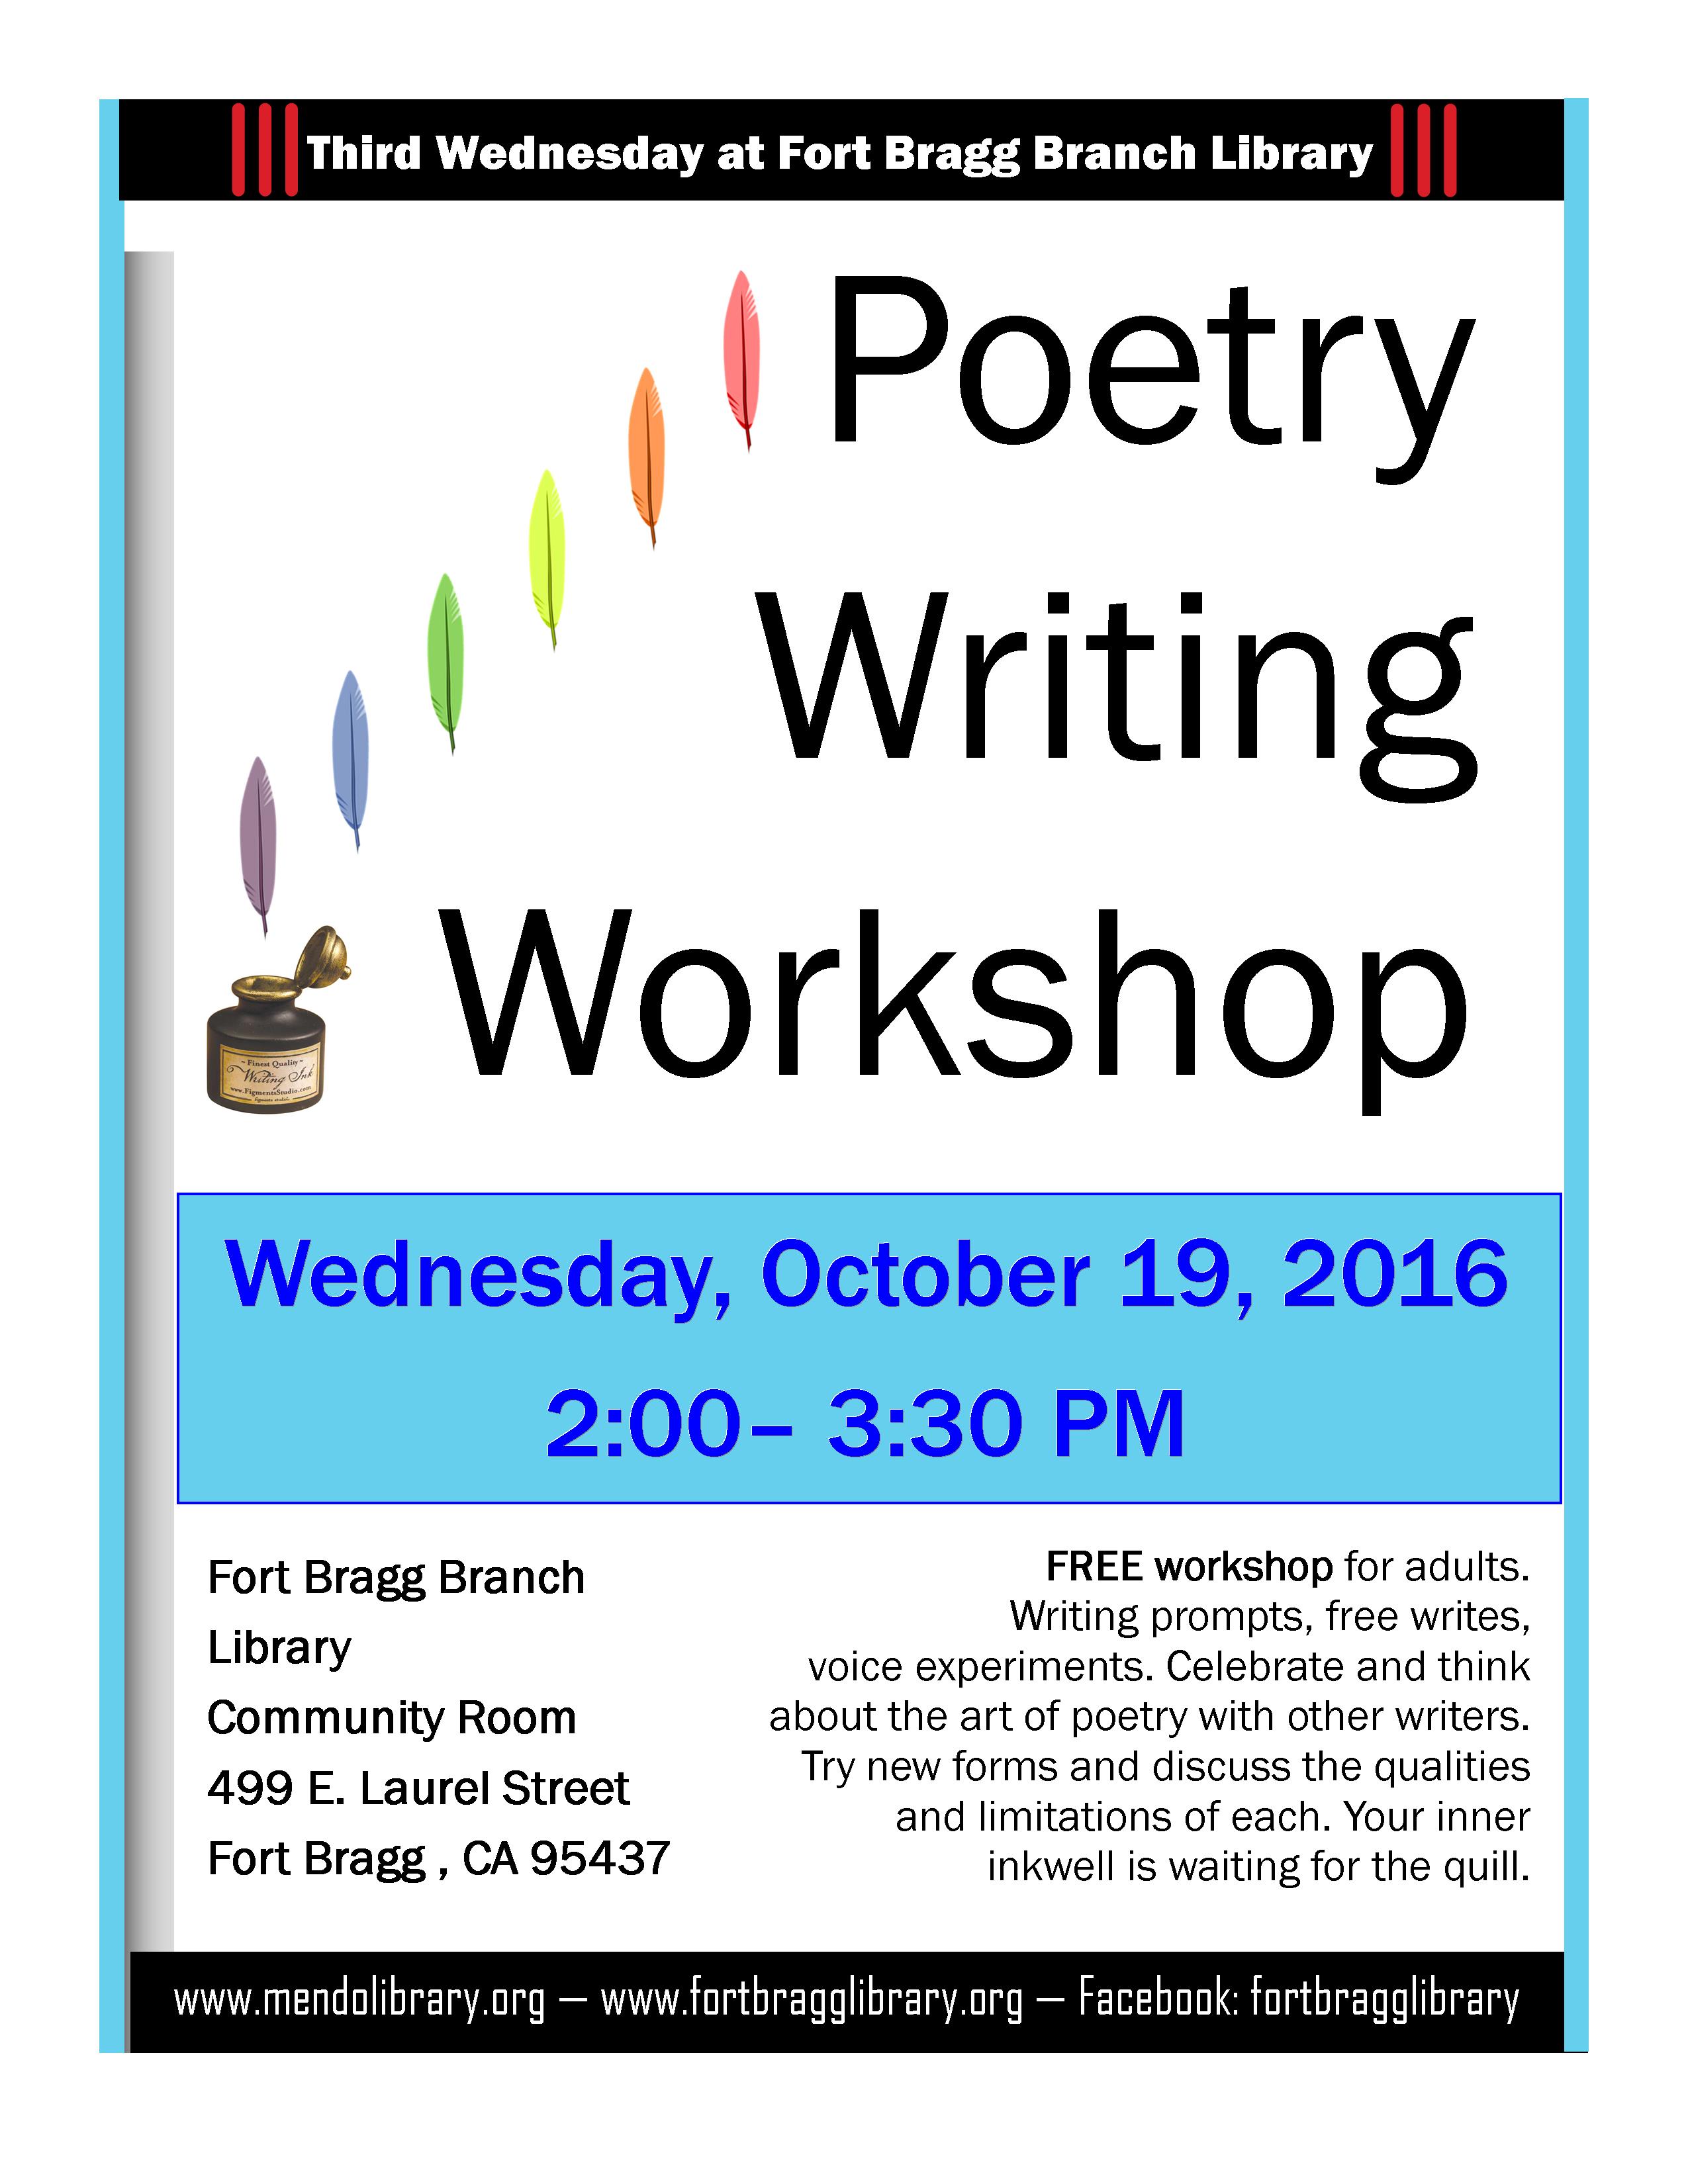 poem writing workshop online